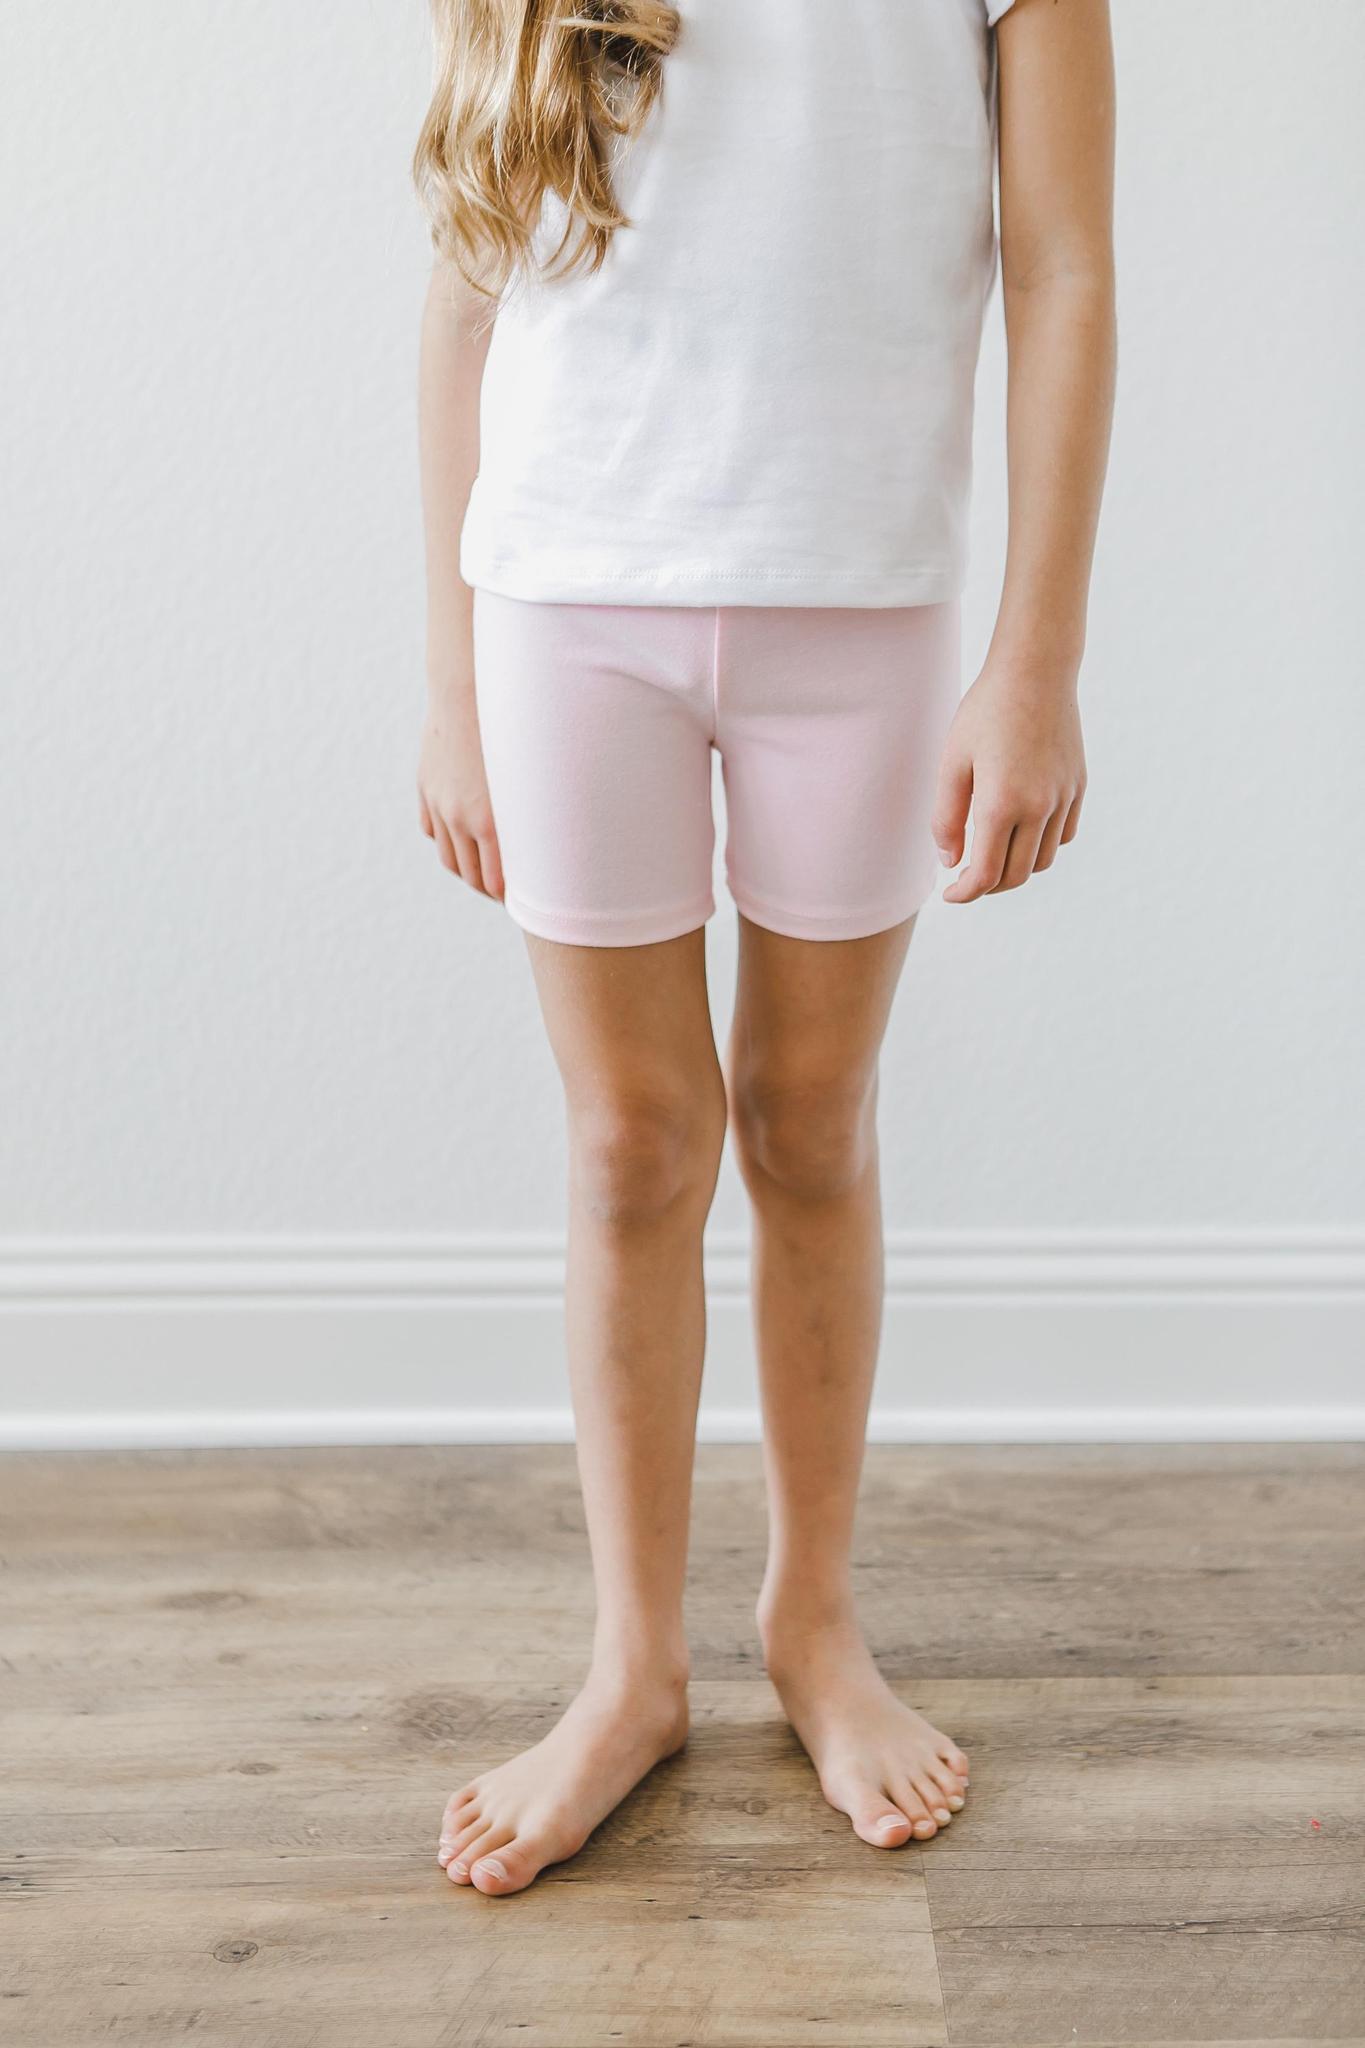 Light Pink Twirl Shorts  - Doodlebug's Children's Boutique